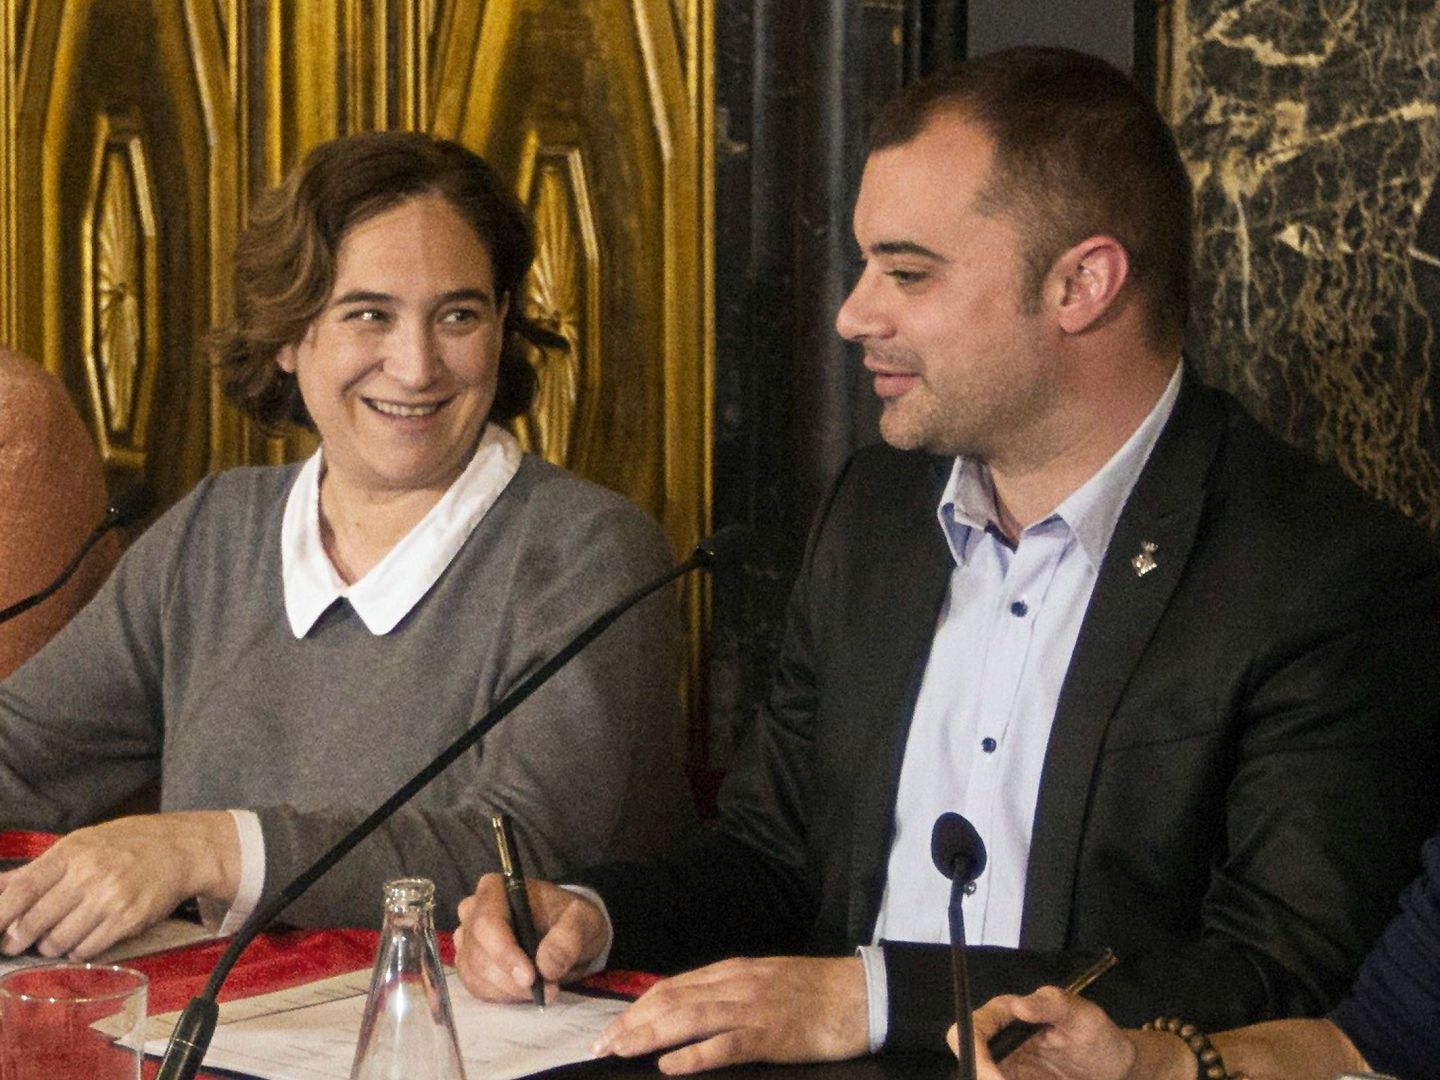 La alcaldesa de Barcelona, Ada Colau, y el entonces regidor de Terrassa, Jordi Ballart, el pasado 22 de marzo en la capital catalana. (EFE)